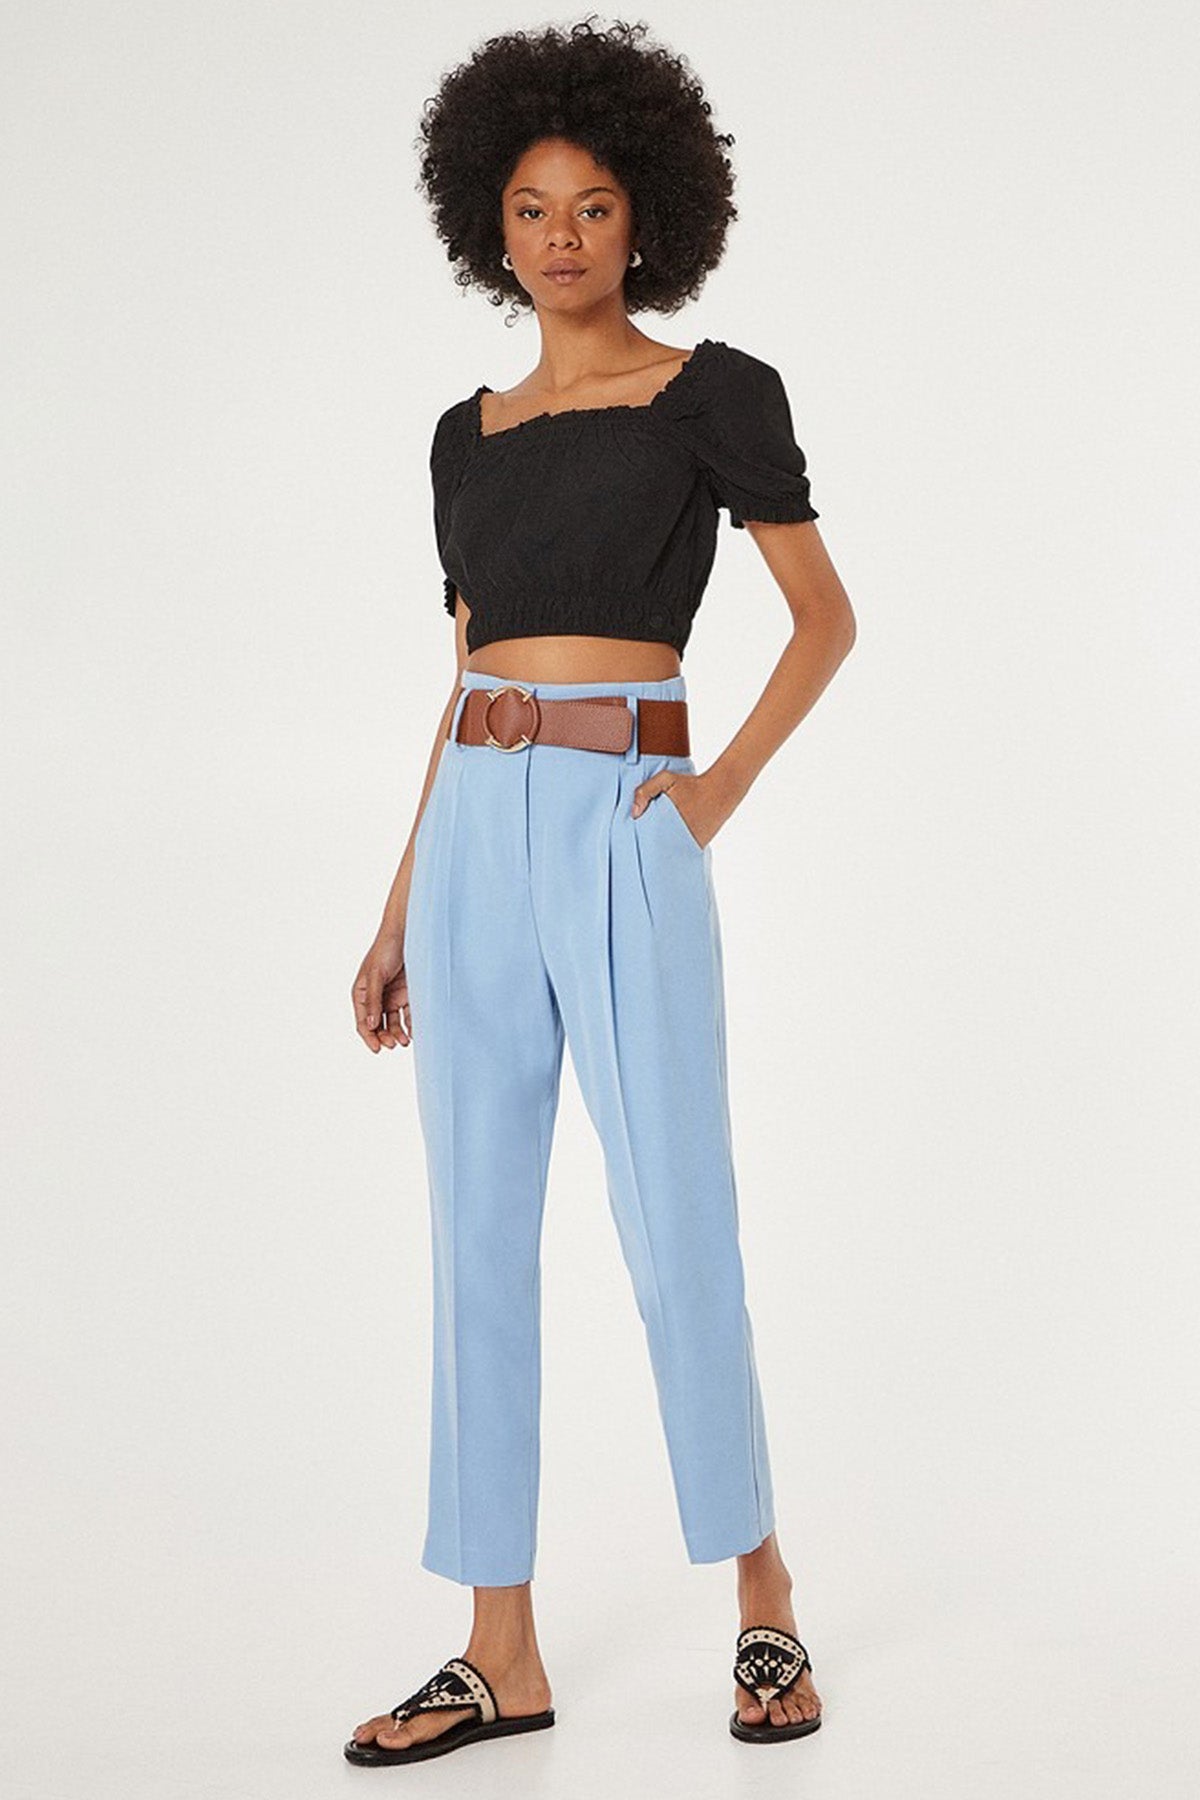 Bsb Pileli Yüksek Bel Pantolon-Libas Trendy Fashion Store